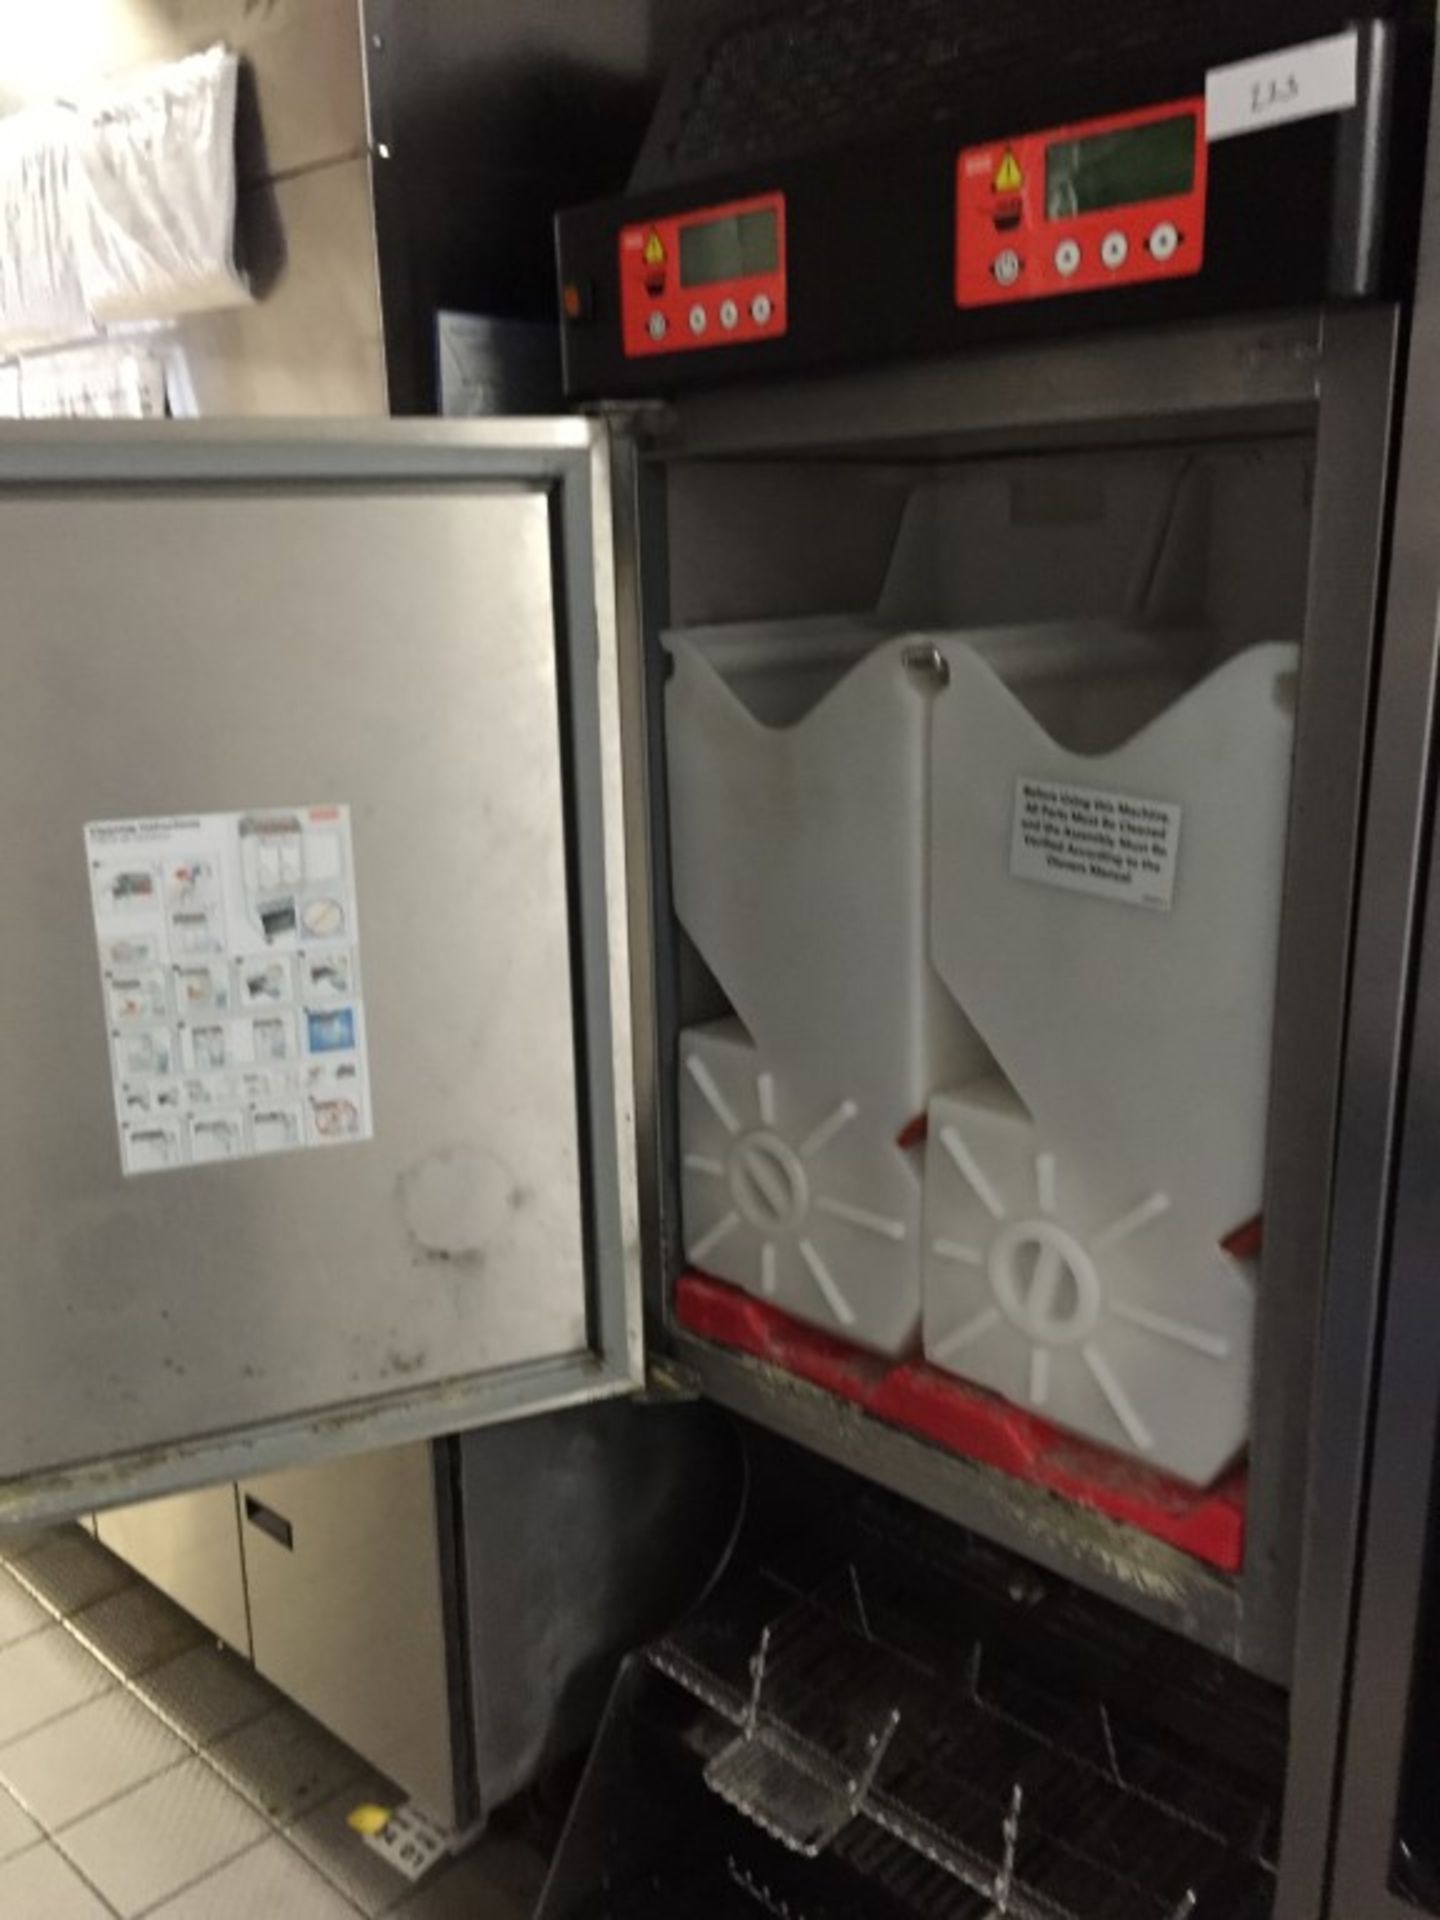 1 x Franke Frozen Food Product Dispenser – Model FD3 - Unique Dispensing system Ensuring Frozen Food - Image 3 of 5